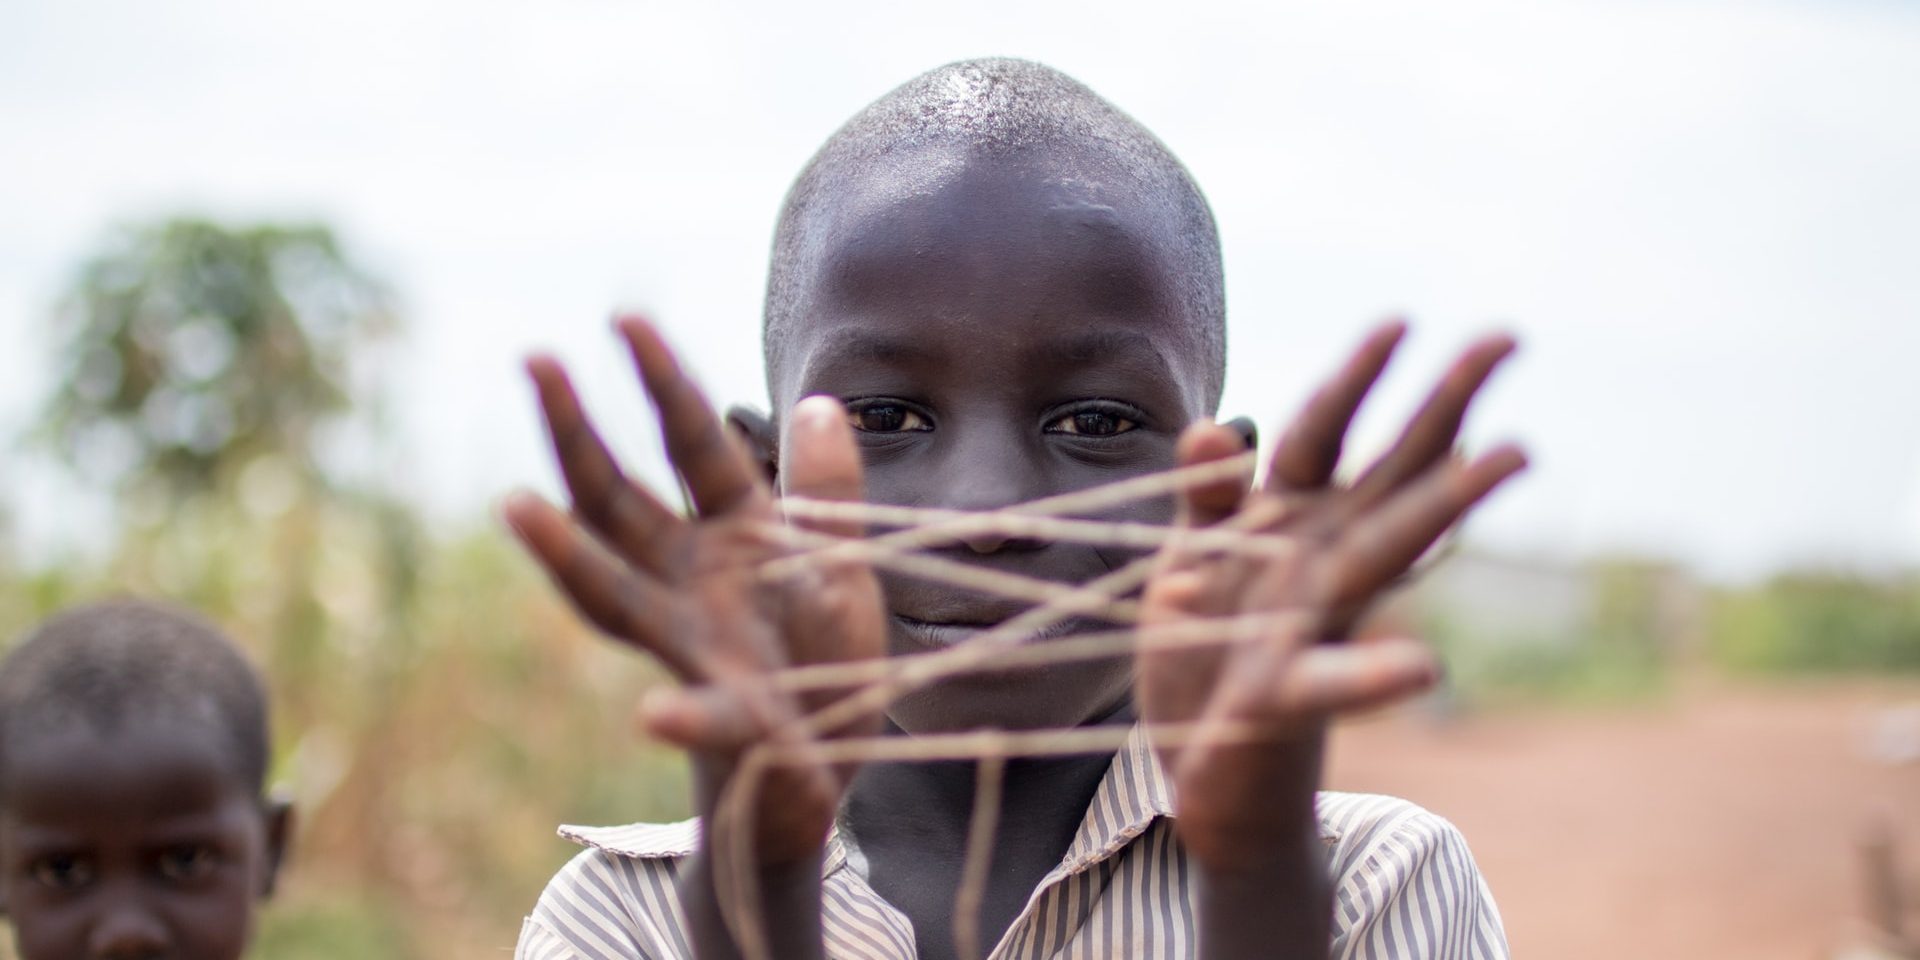 Children in Uganda